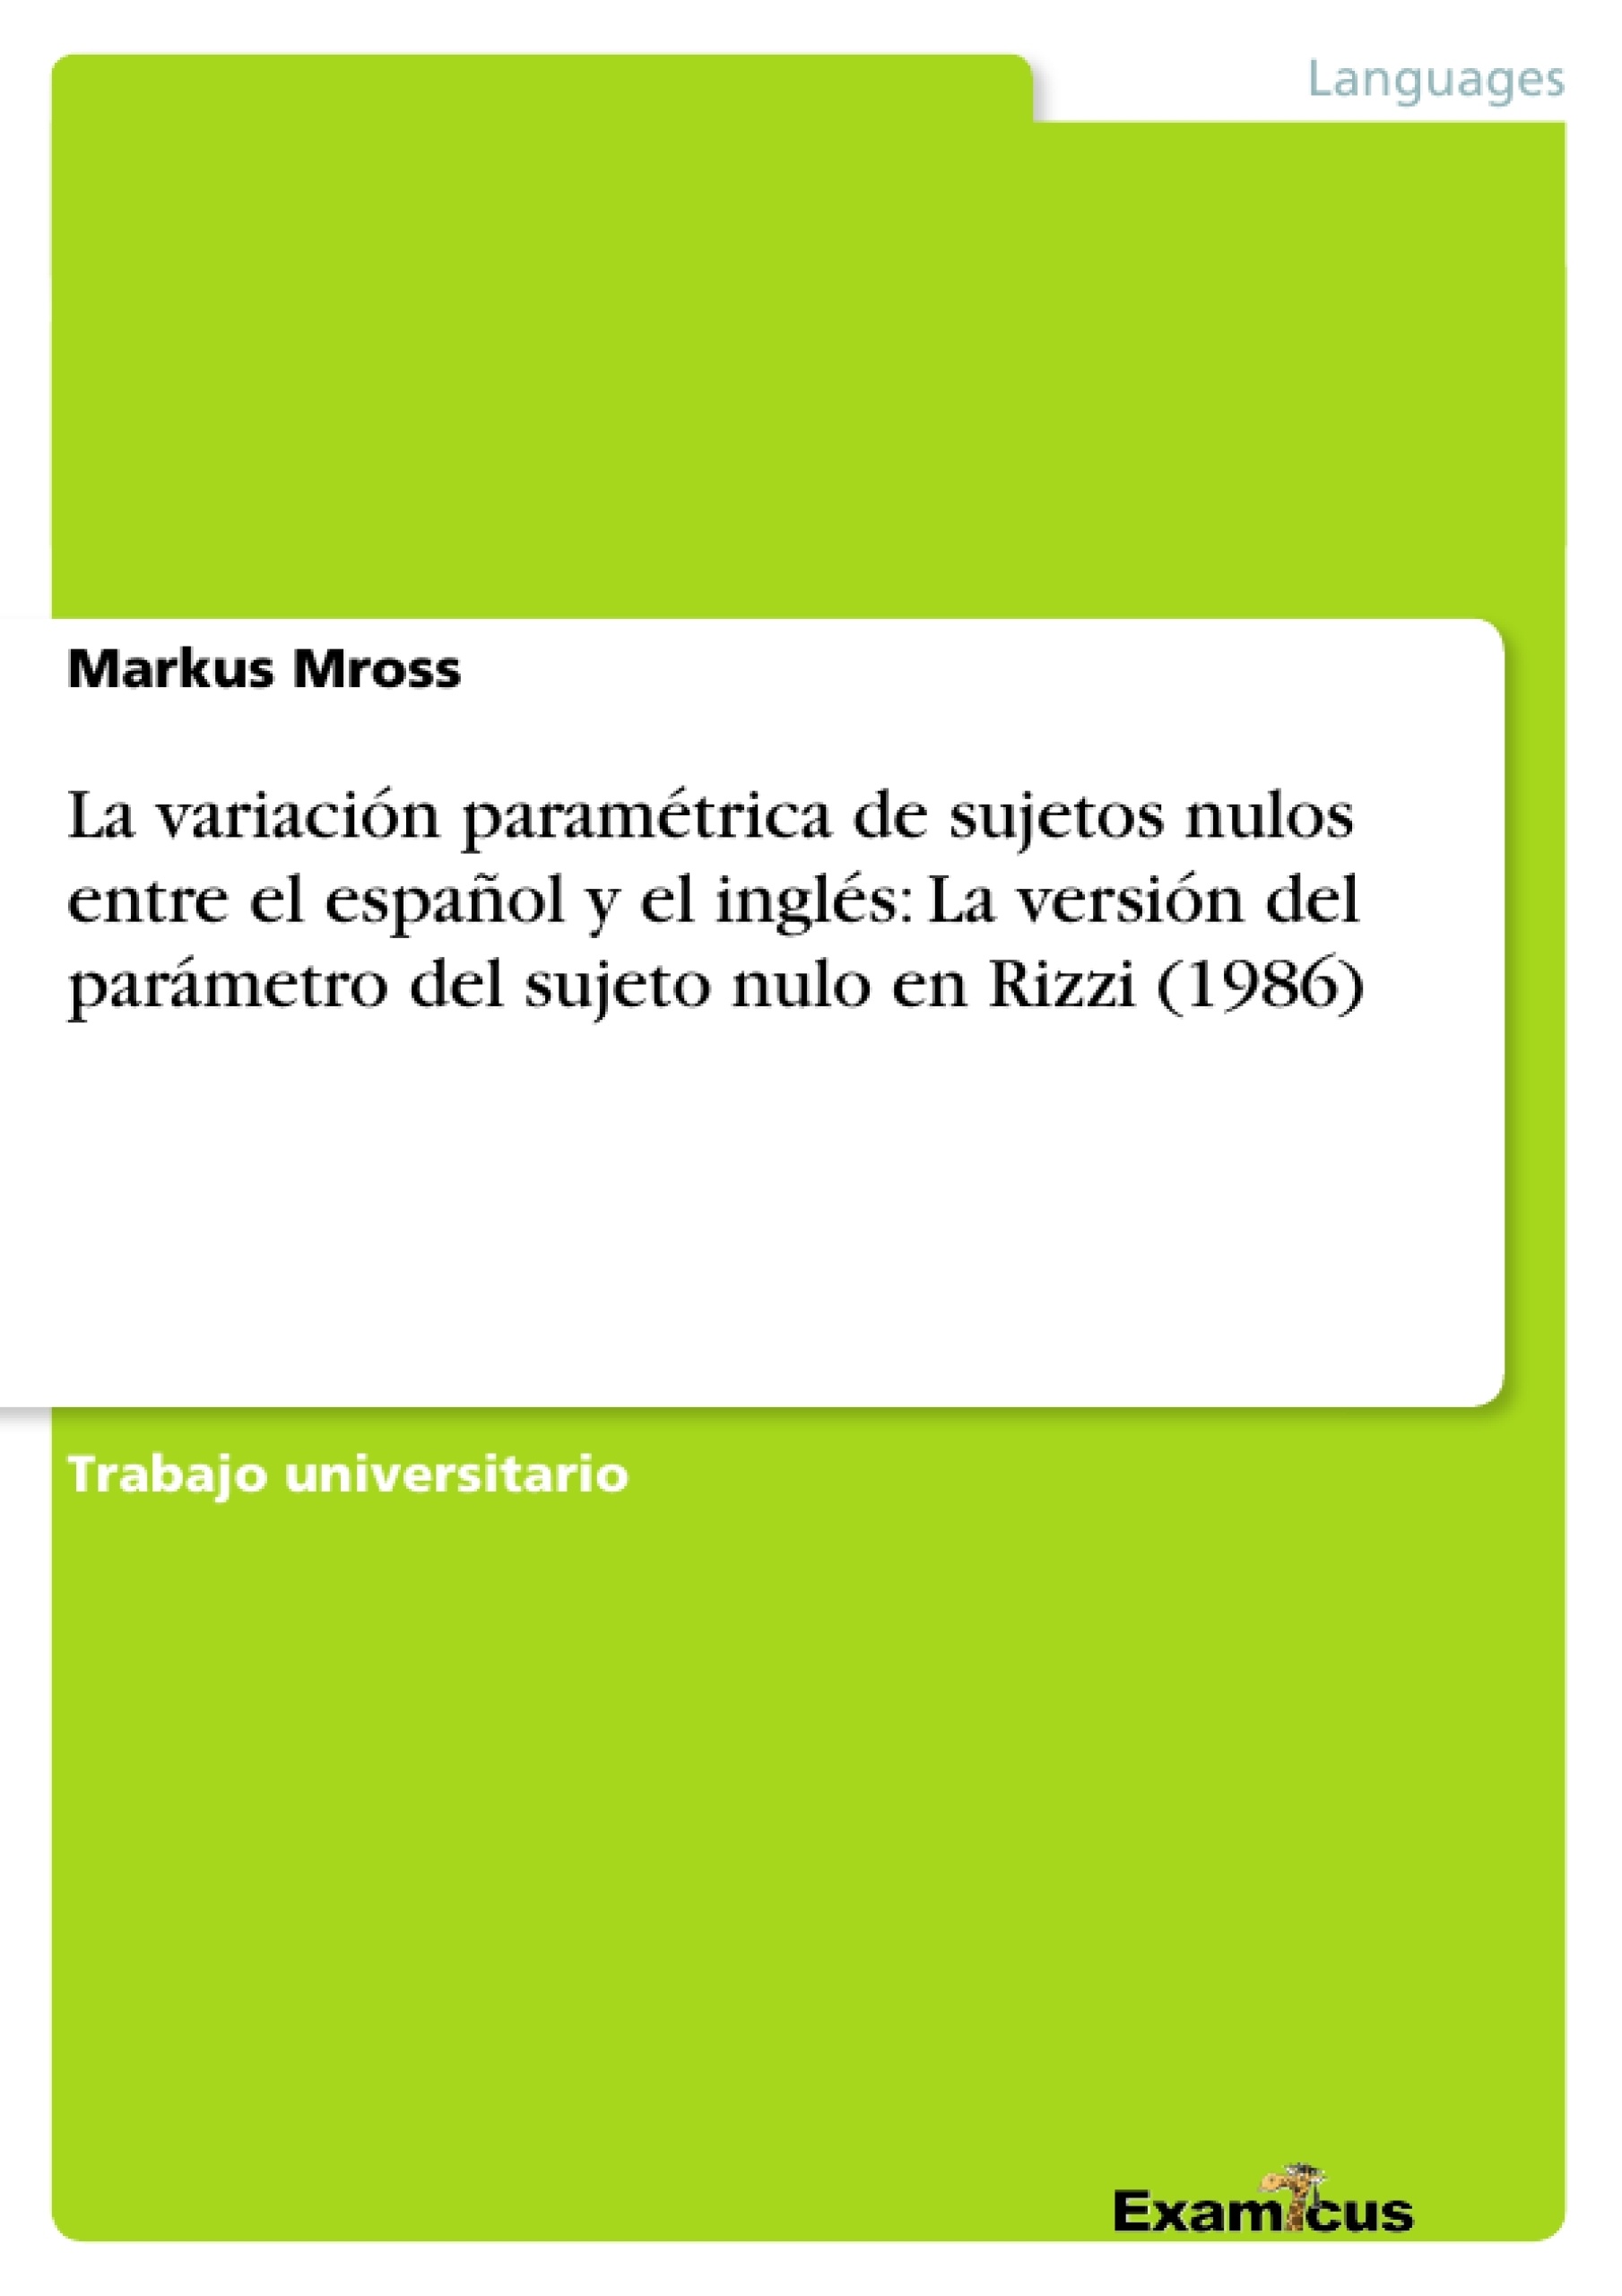 Titre: La variación paramétrica de sujetos nulos entre el español y el inglés: La versión del parámetro del sujeto nulo en Rizzi (1986)